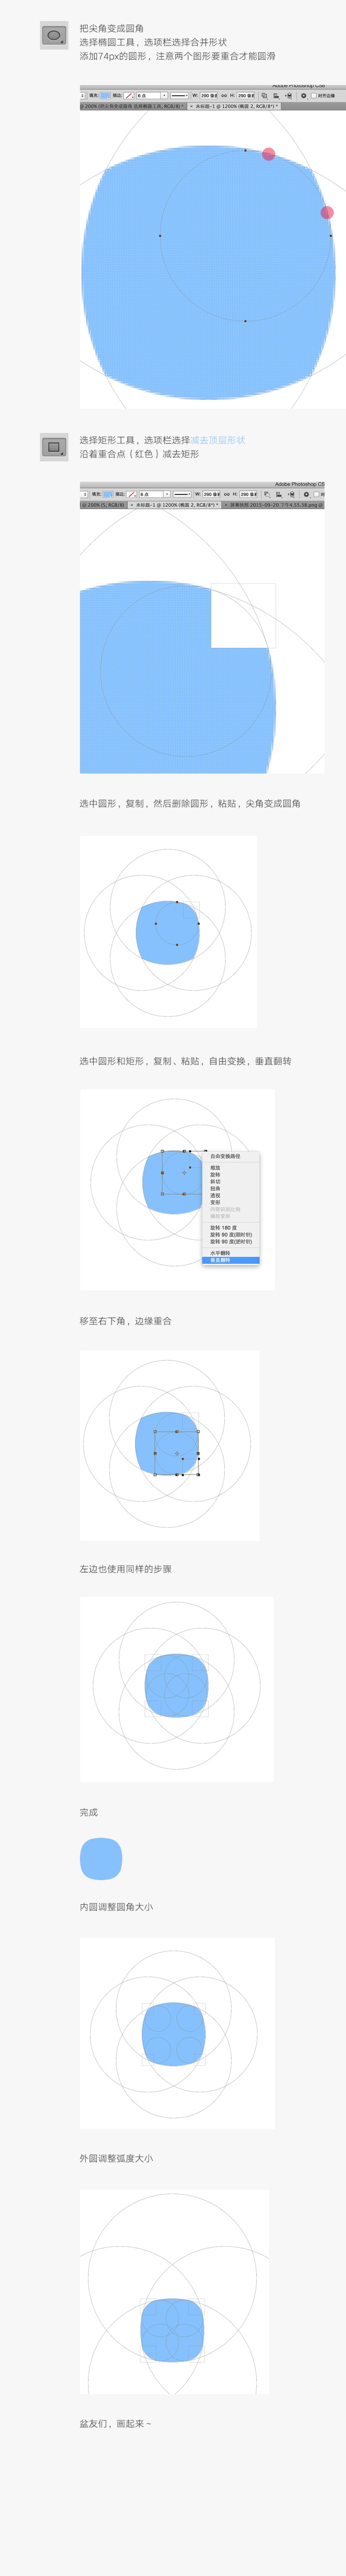 3种方法教你快速绘制椭圆矩形,毅耘科技